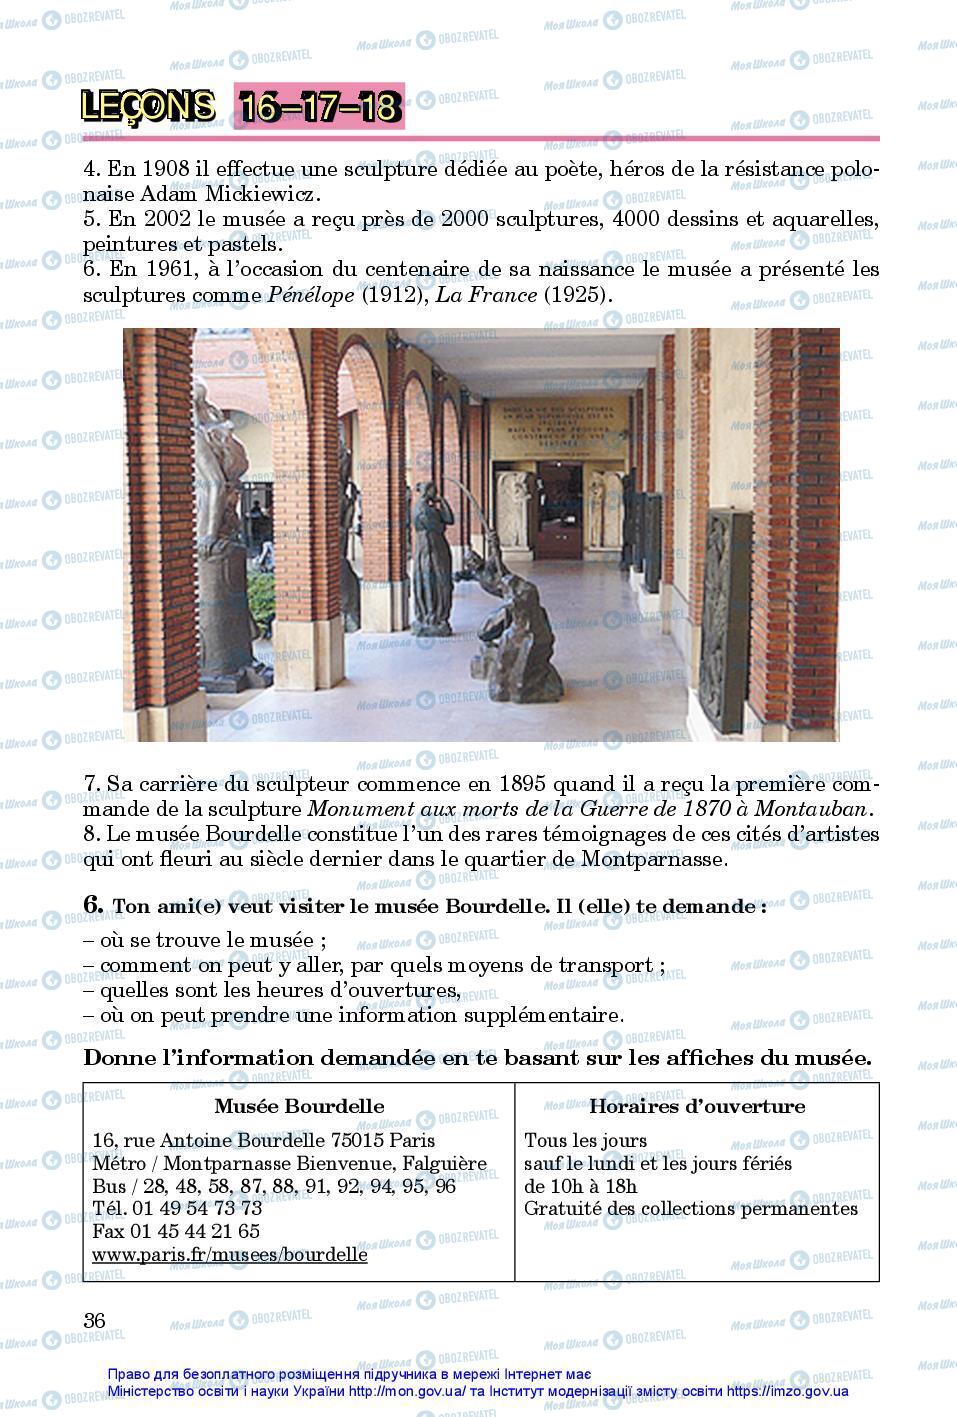 Підручники Французька мова 7 клас сторінка 36